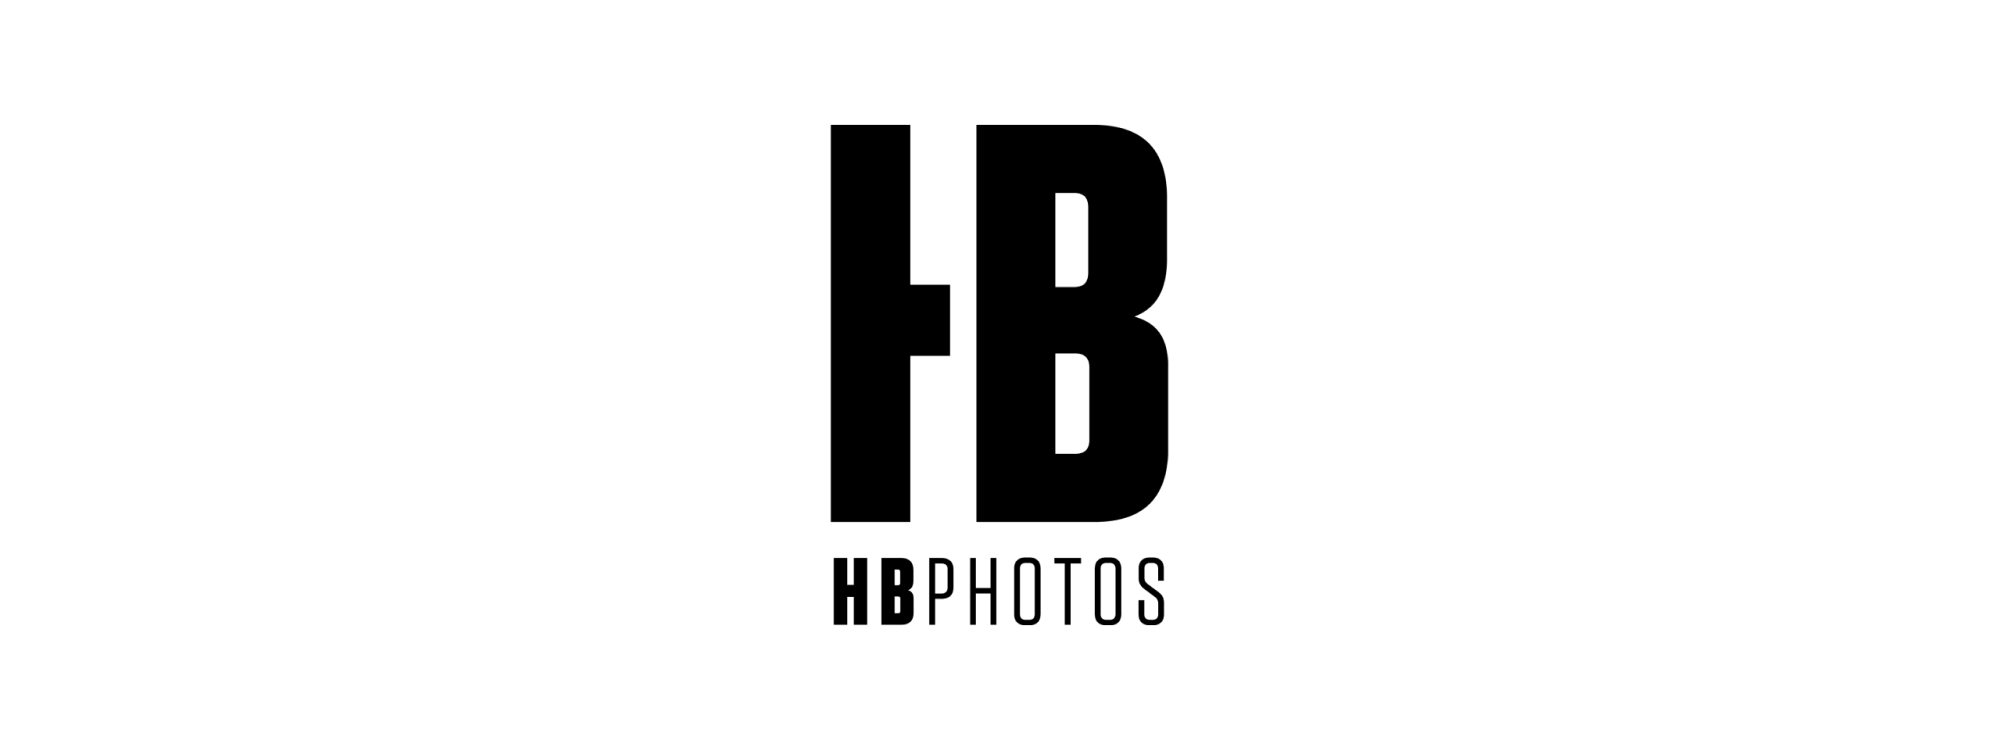 HB Photos